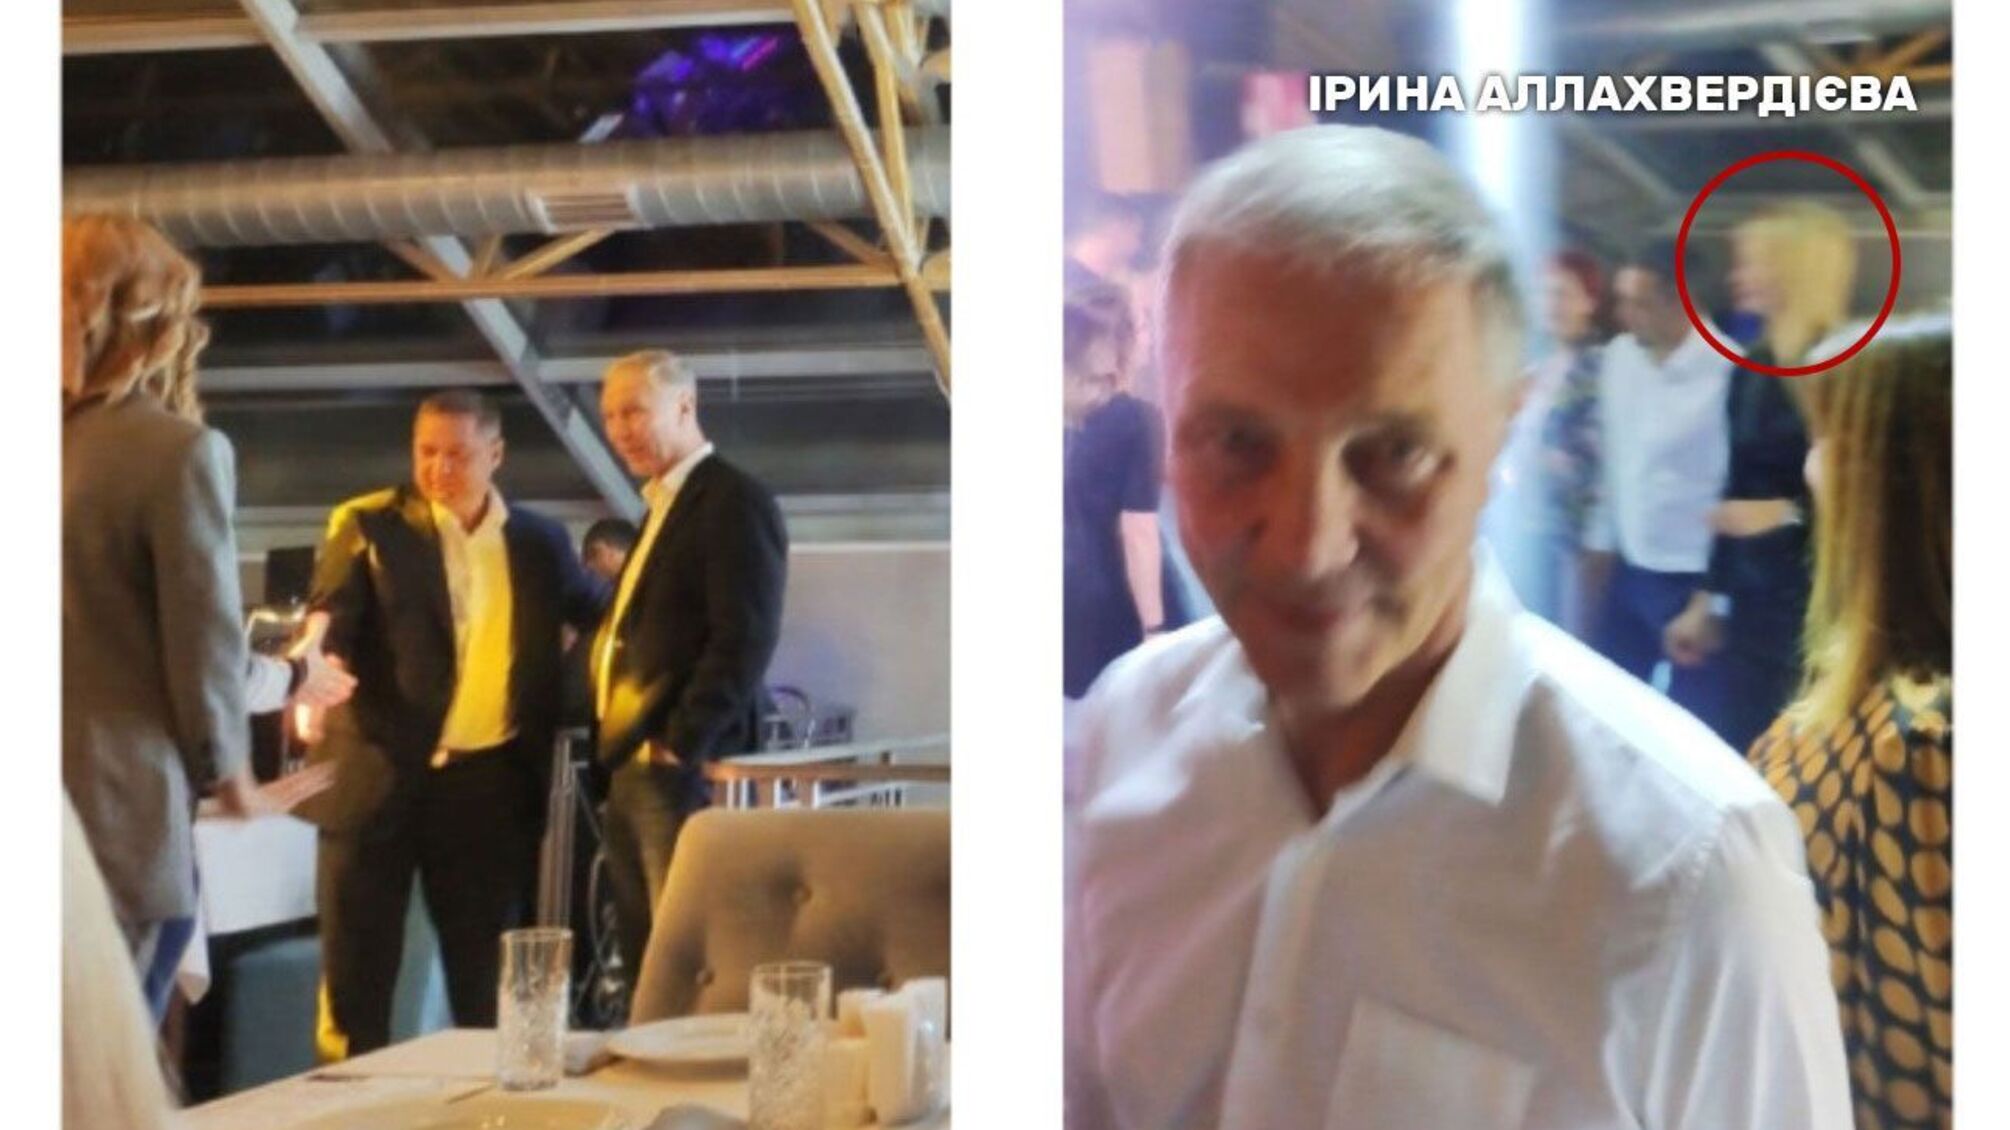 Журналисты обнародовали удаленные из сети фото вечеринки с участием 'слуги' Аллахвердиевой и Сальдо